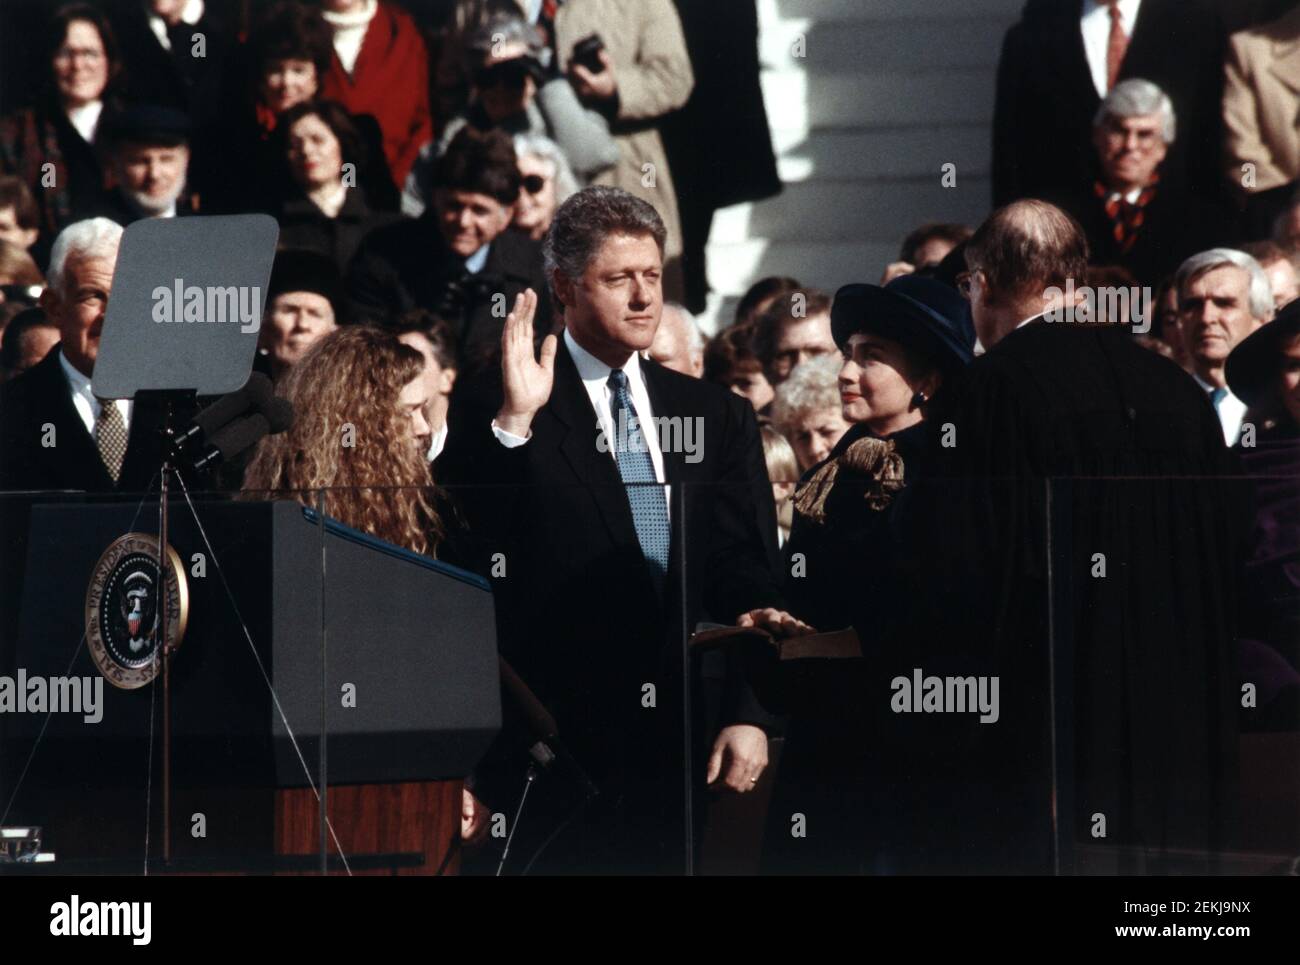 Bill Clinton, debout entre Hillary Rodham Clinton et Chelsea Clinton, prêtant le serment de président des États-Unis, Washington, D.C., USA, photo officielle de la Maison Blanche, 20 janvier 1993 Banque D'Images